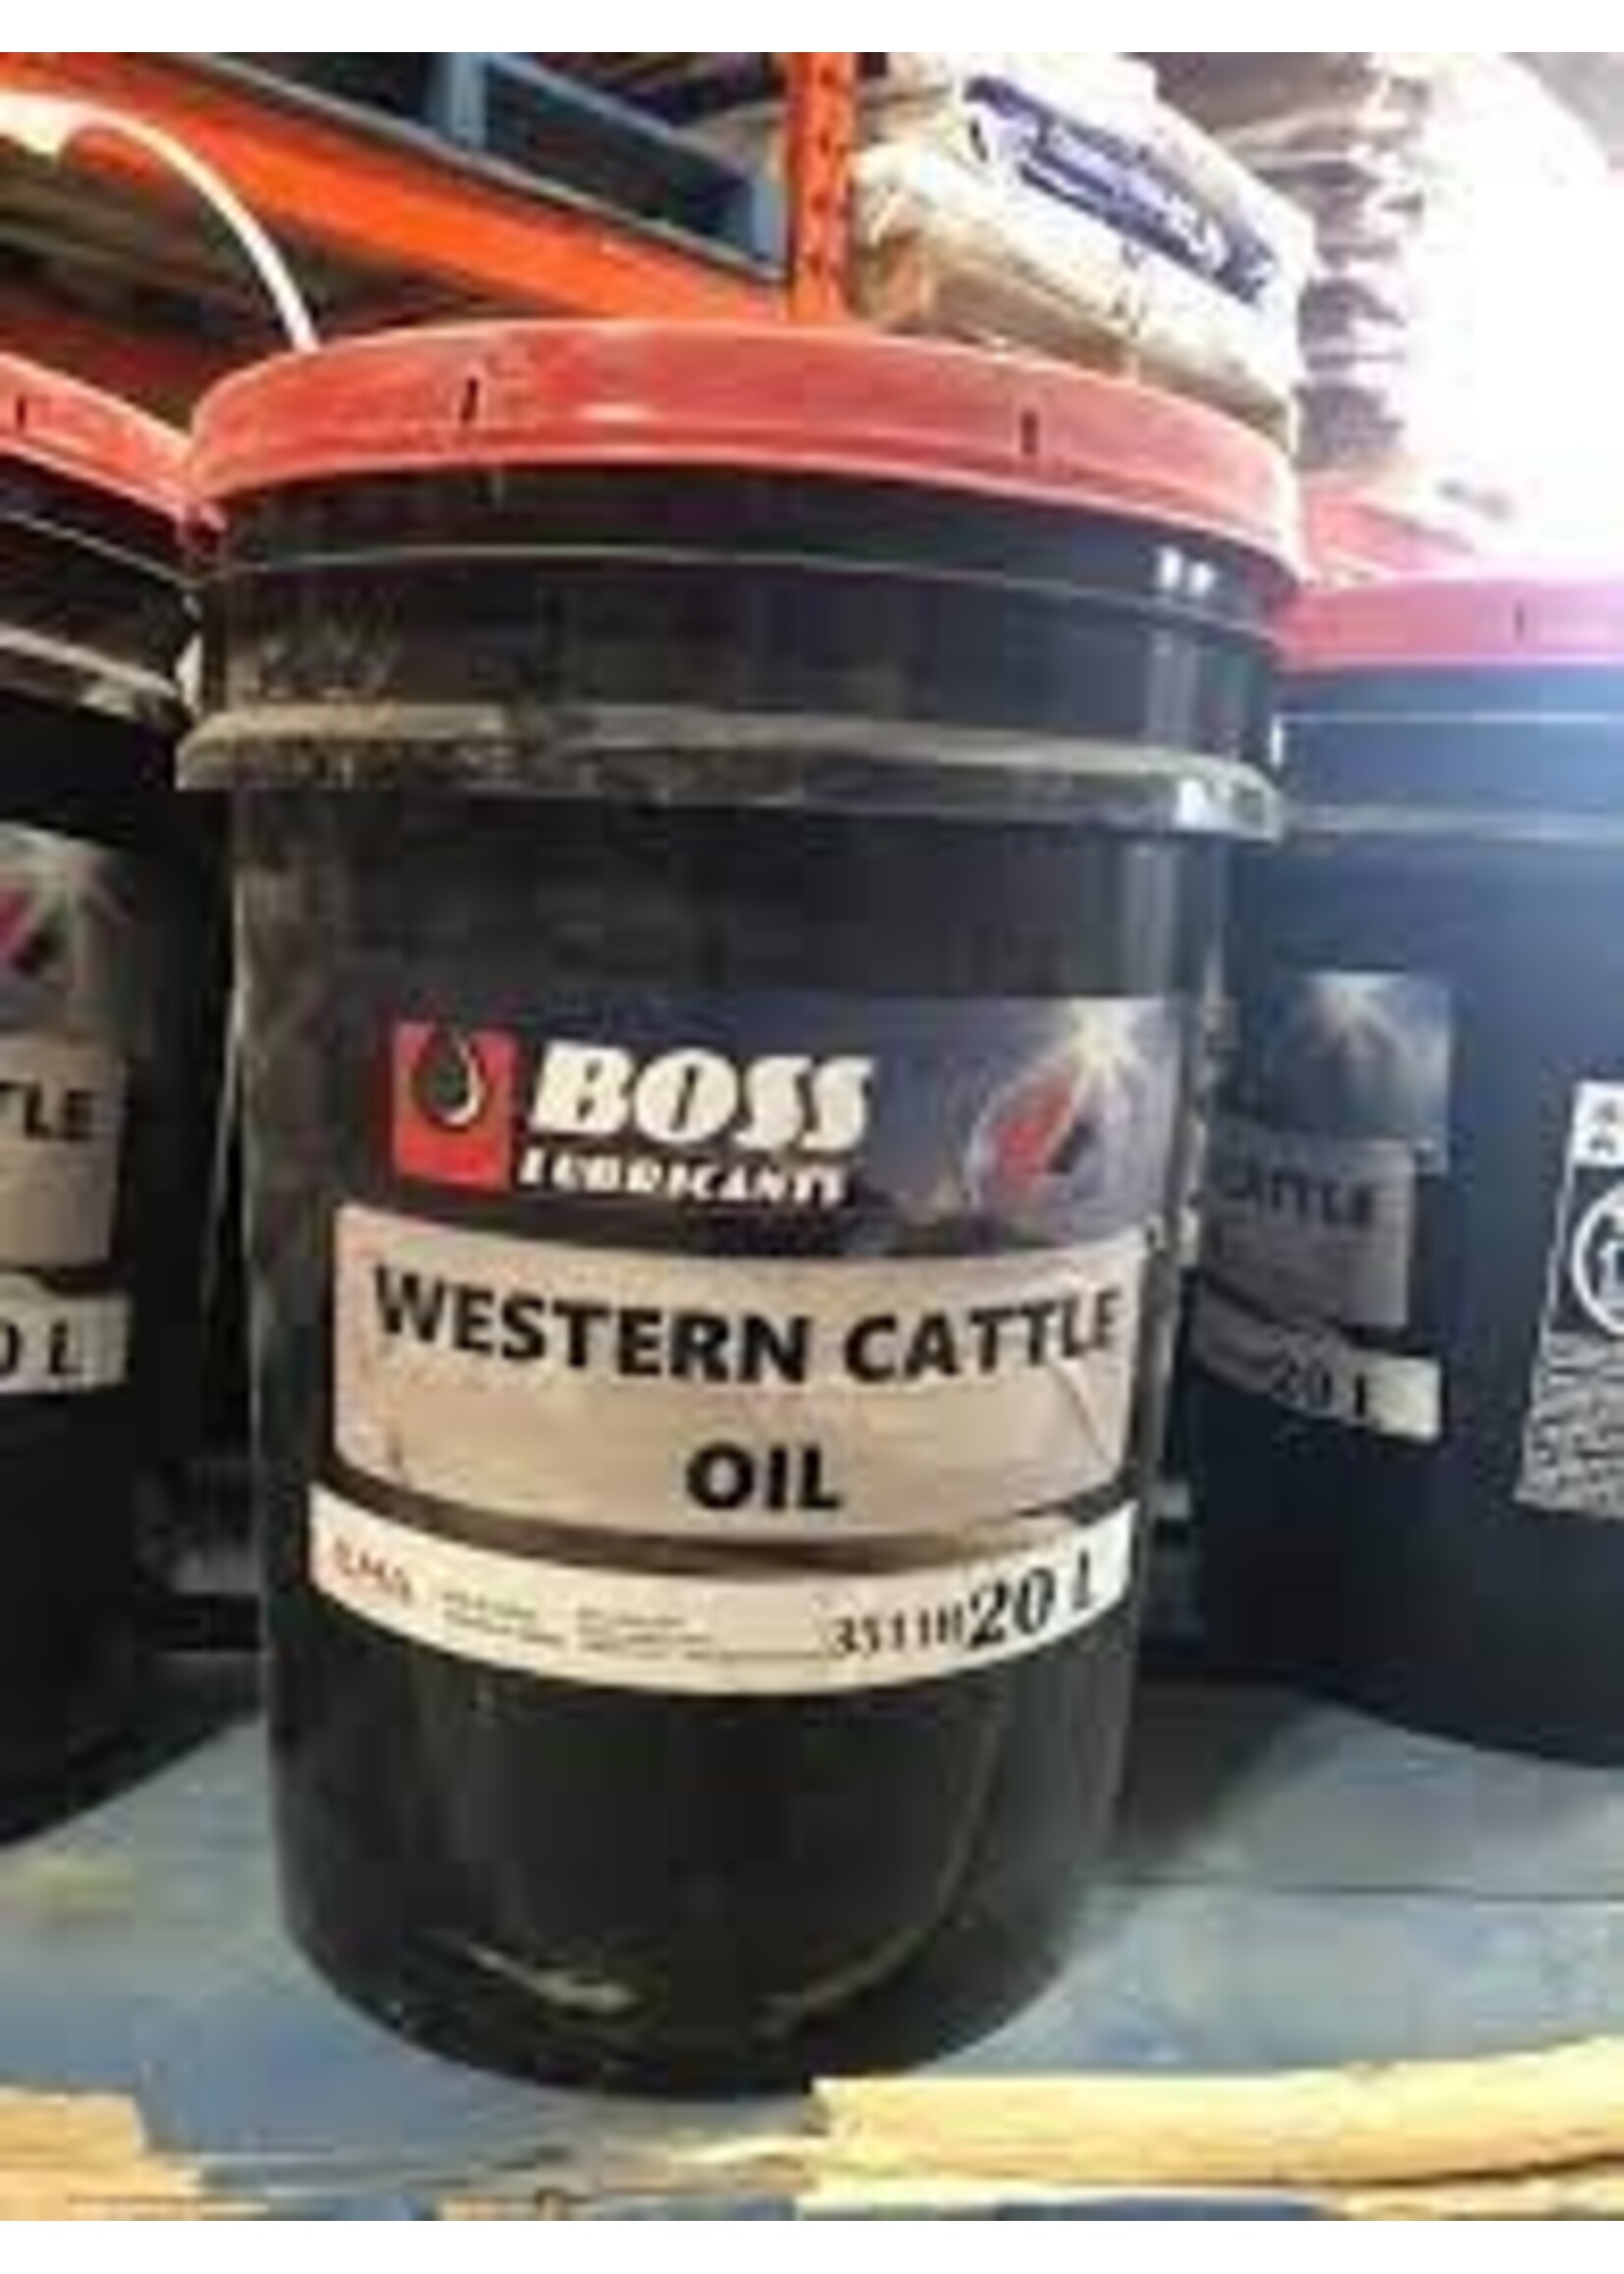 BOSS LUBRICANTS Western Cattle Oil